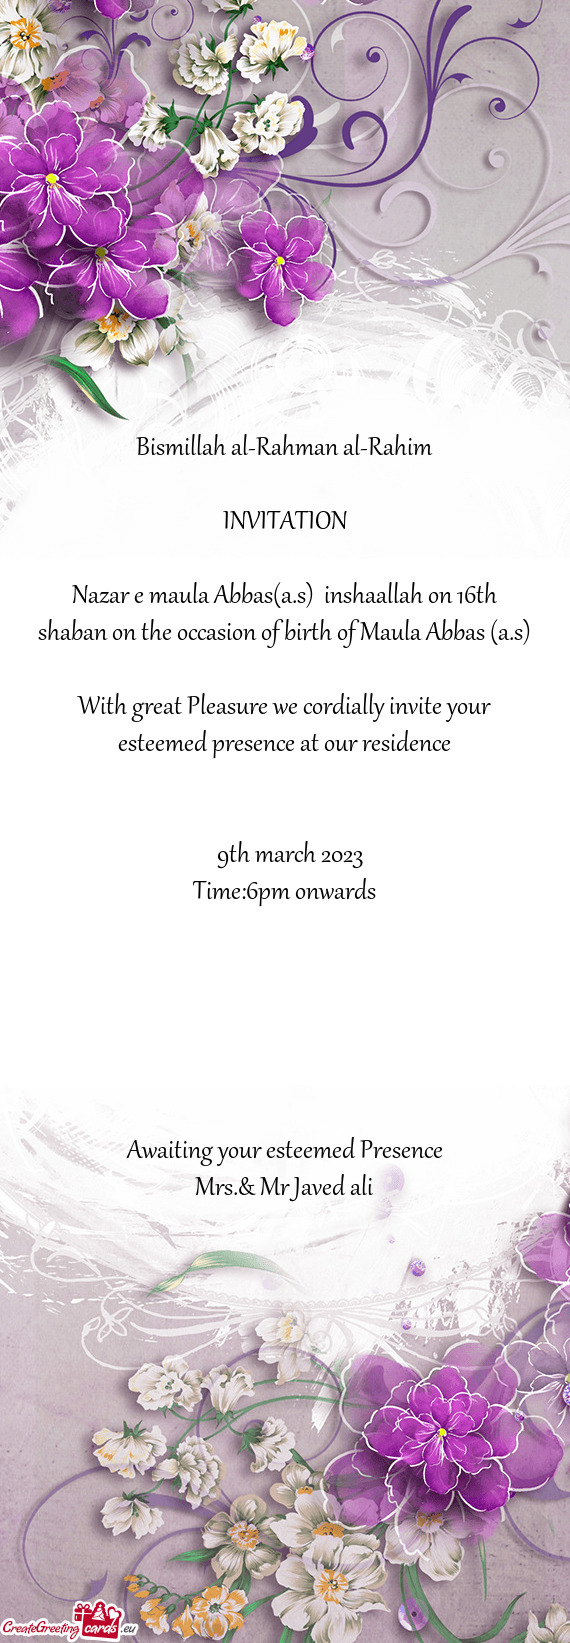 Nazar e maula Abbas(a.s) inshaallah on 16th shaban on the occasion of birth of Maula Abbas (a.s)